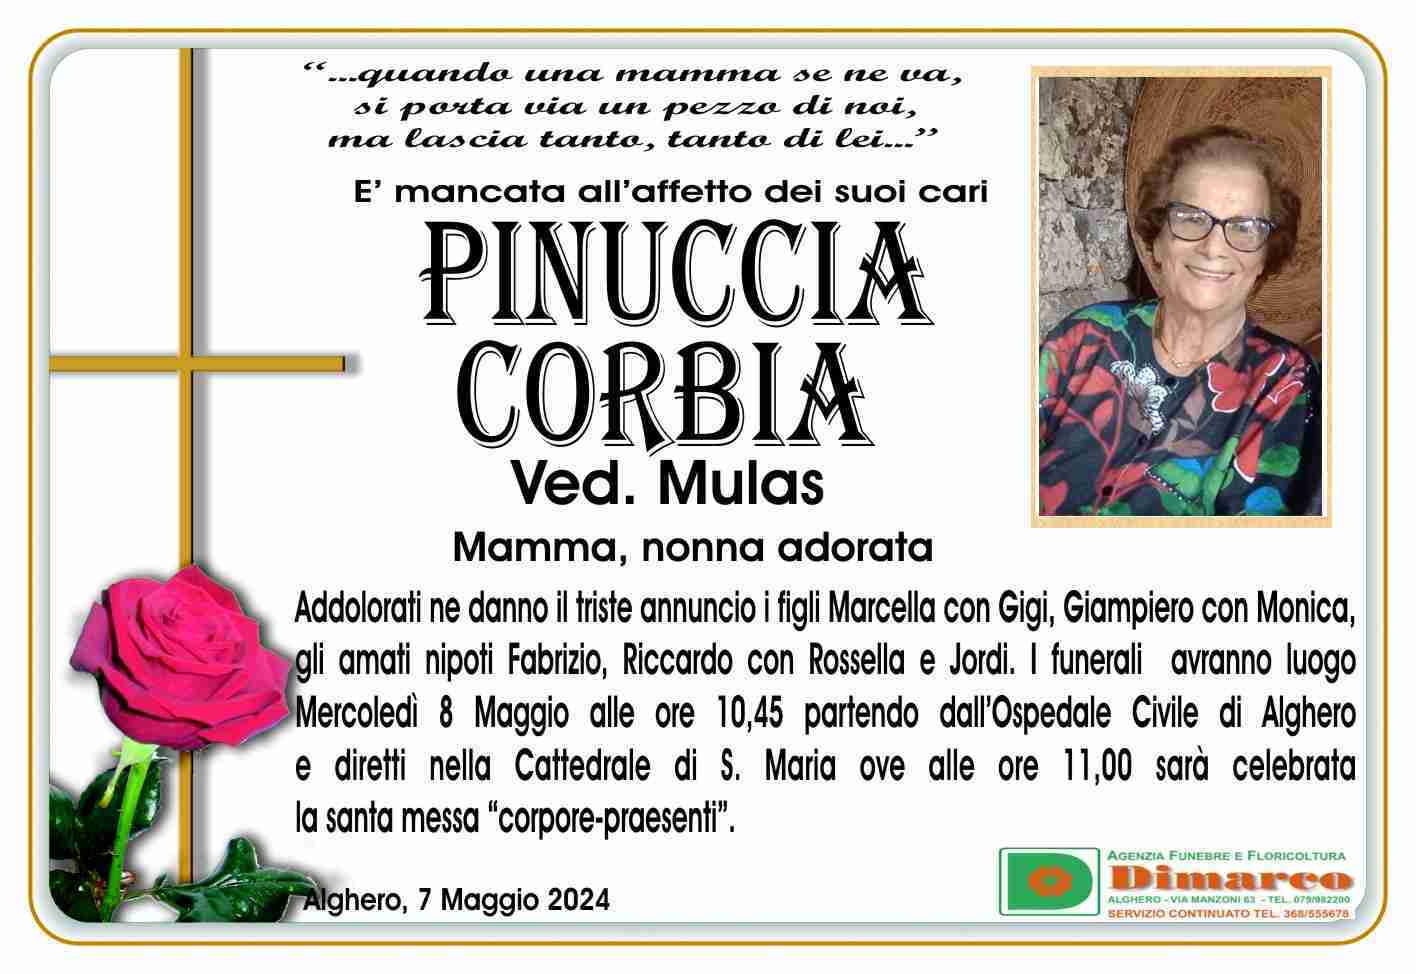 Corbia Pinuccia